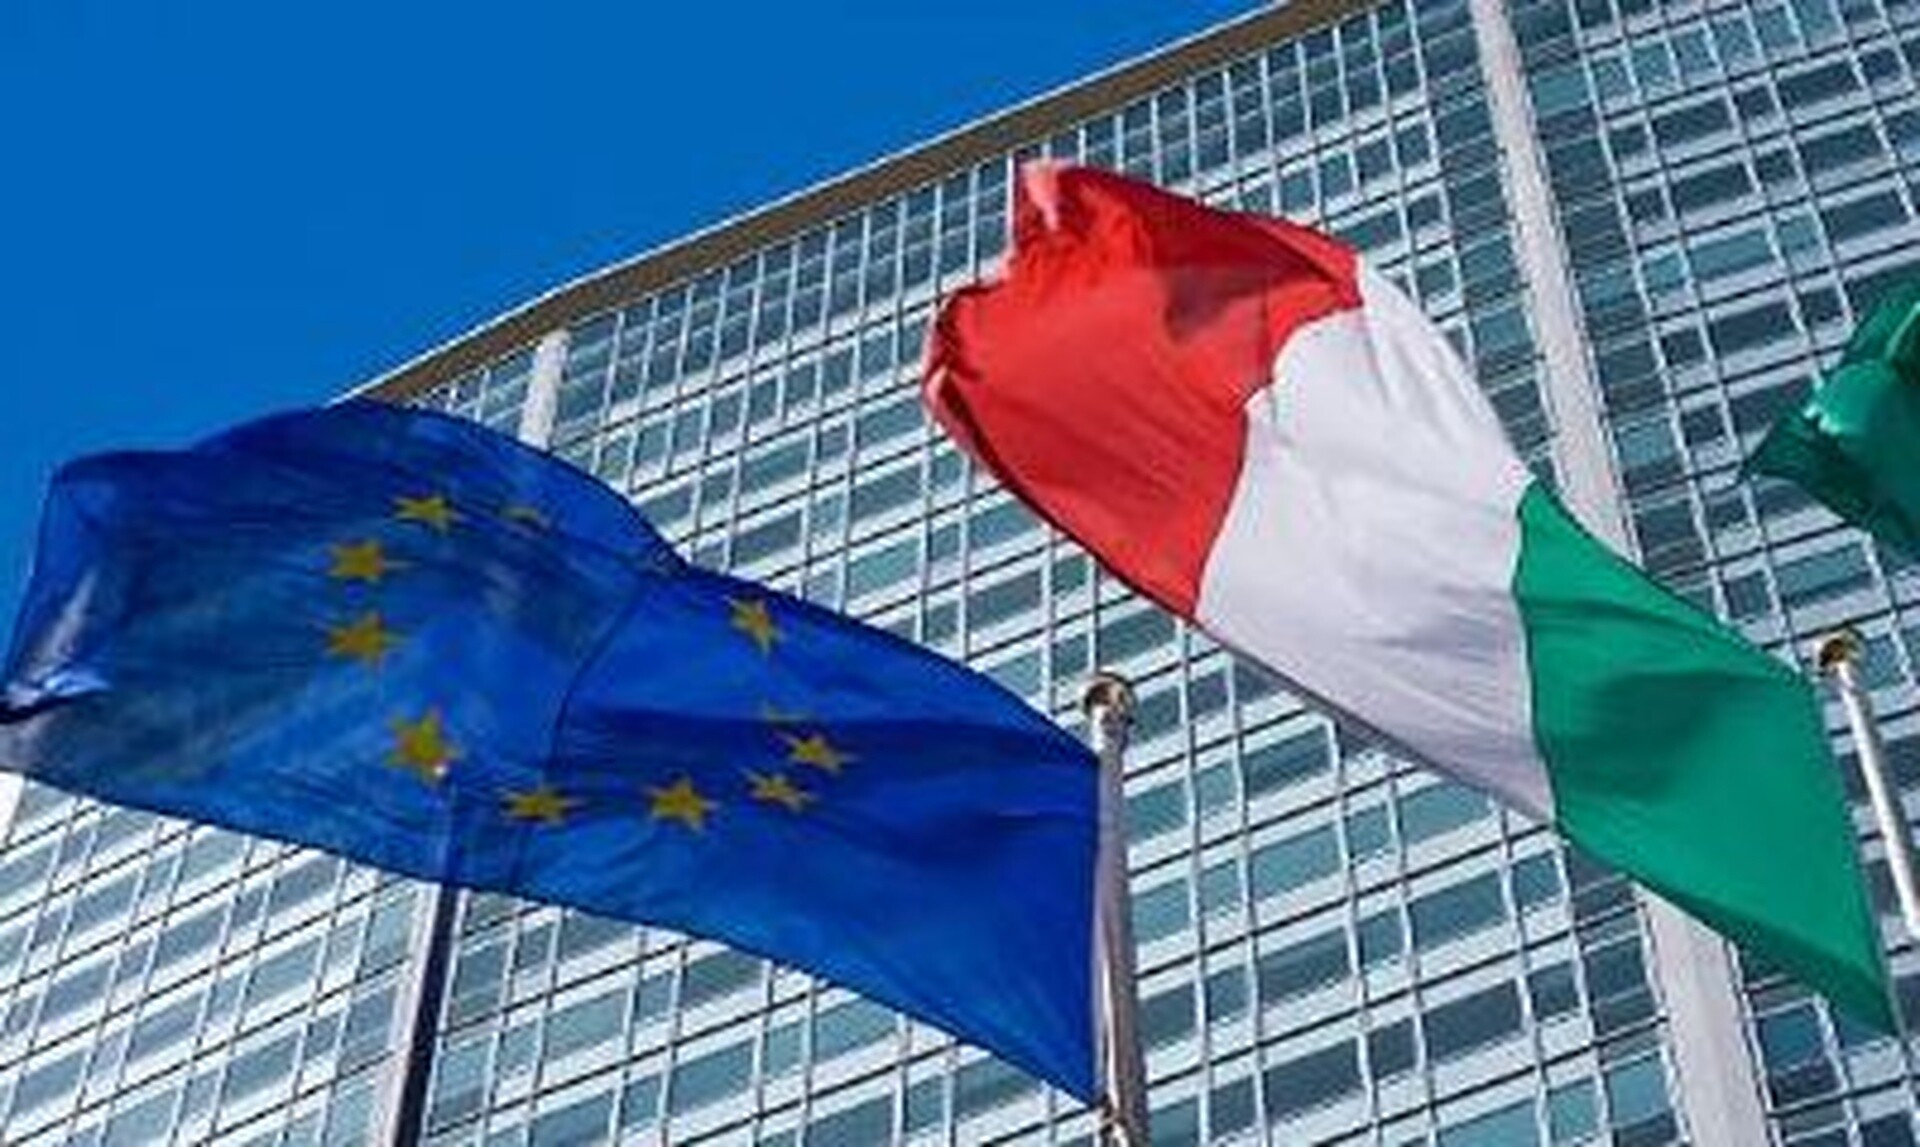 Η Ευρωπαϊκή Ένωση ξεκινάει διαδικασία υπερβολικού ελλείμματος στην Ιταλία